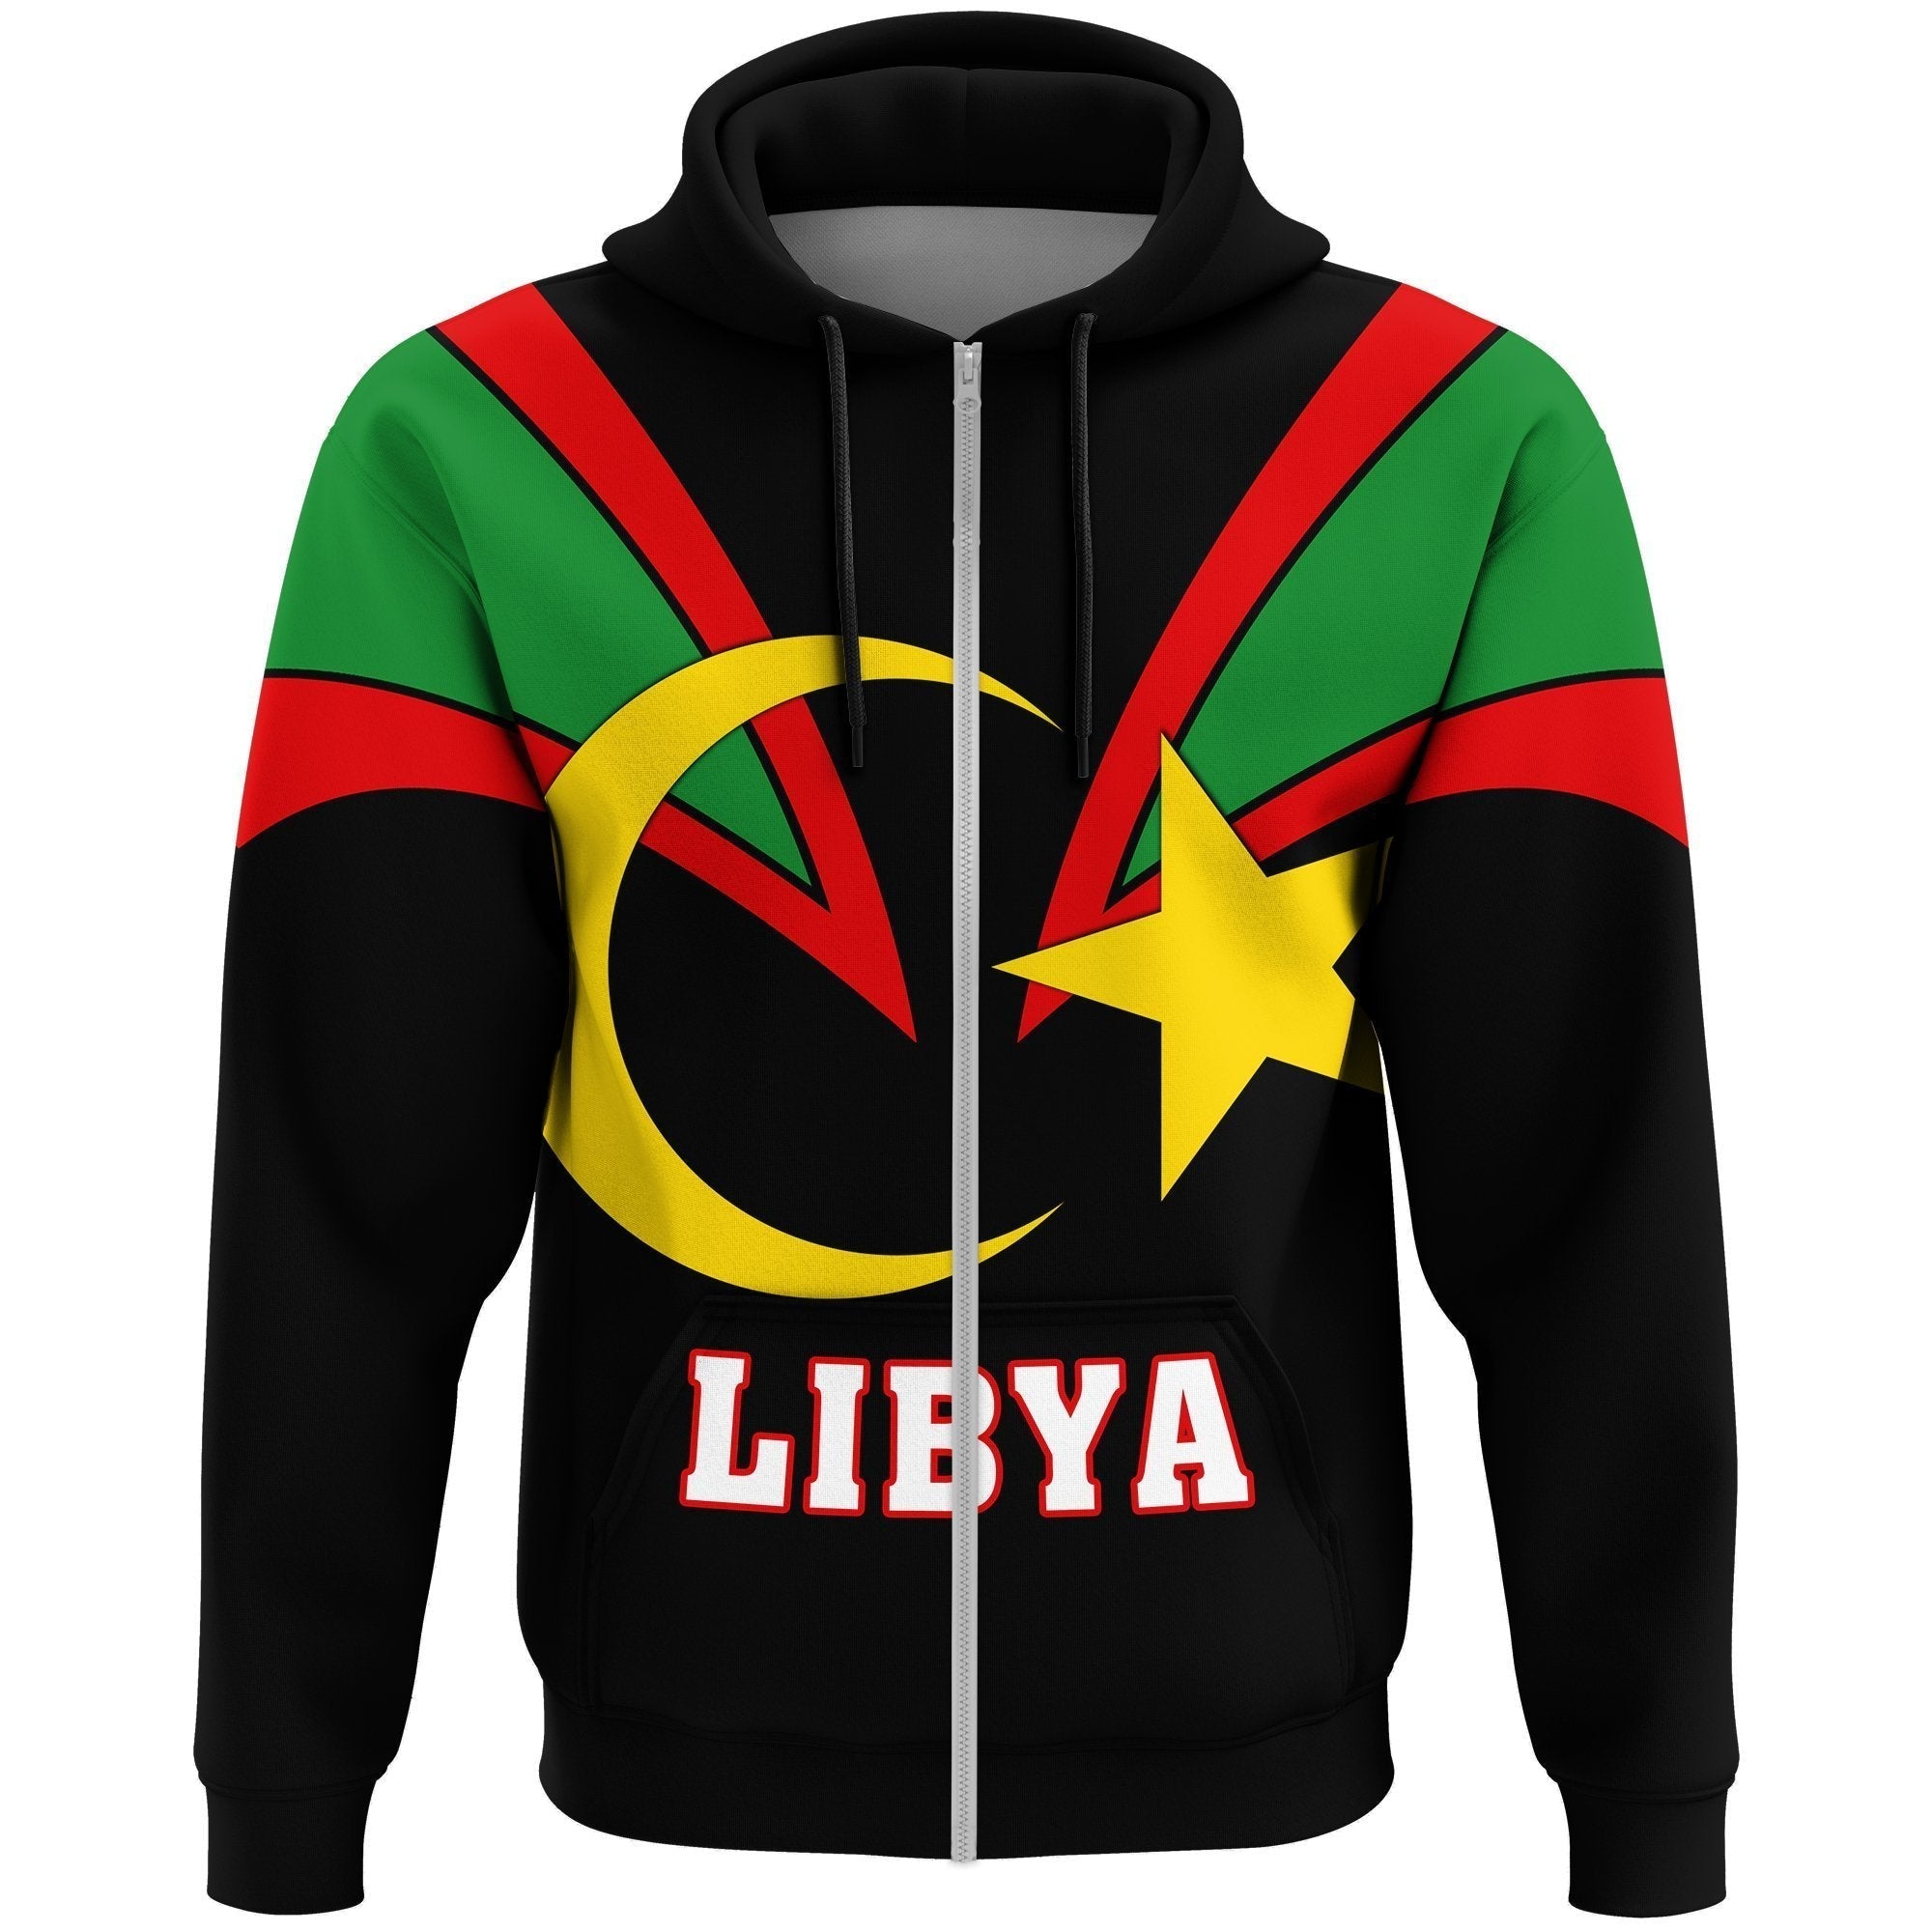 wonder-print-shop-hoodie-libya-zip-hoodie-tusk-style